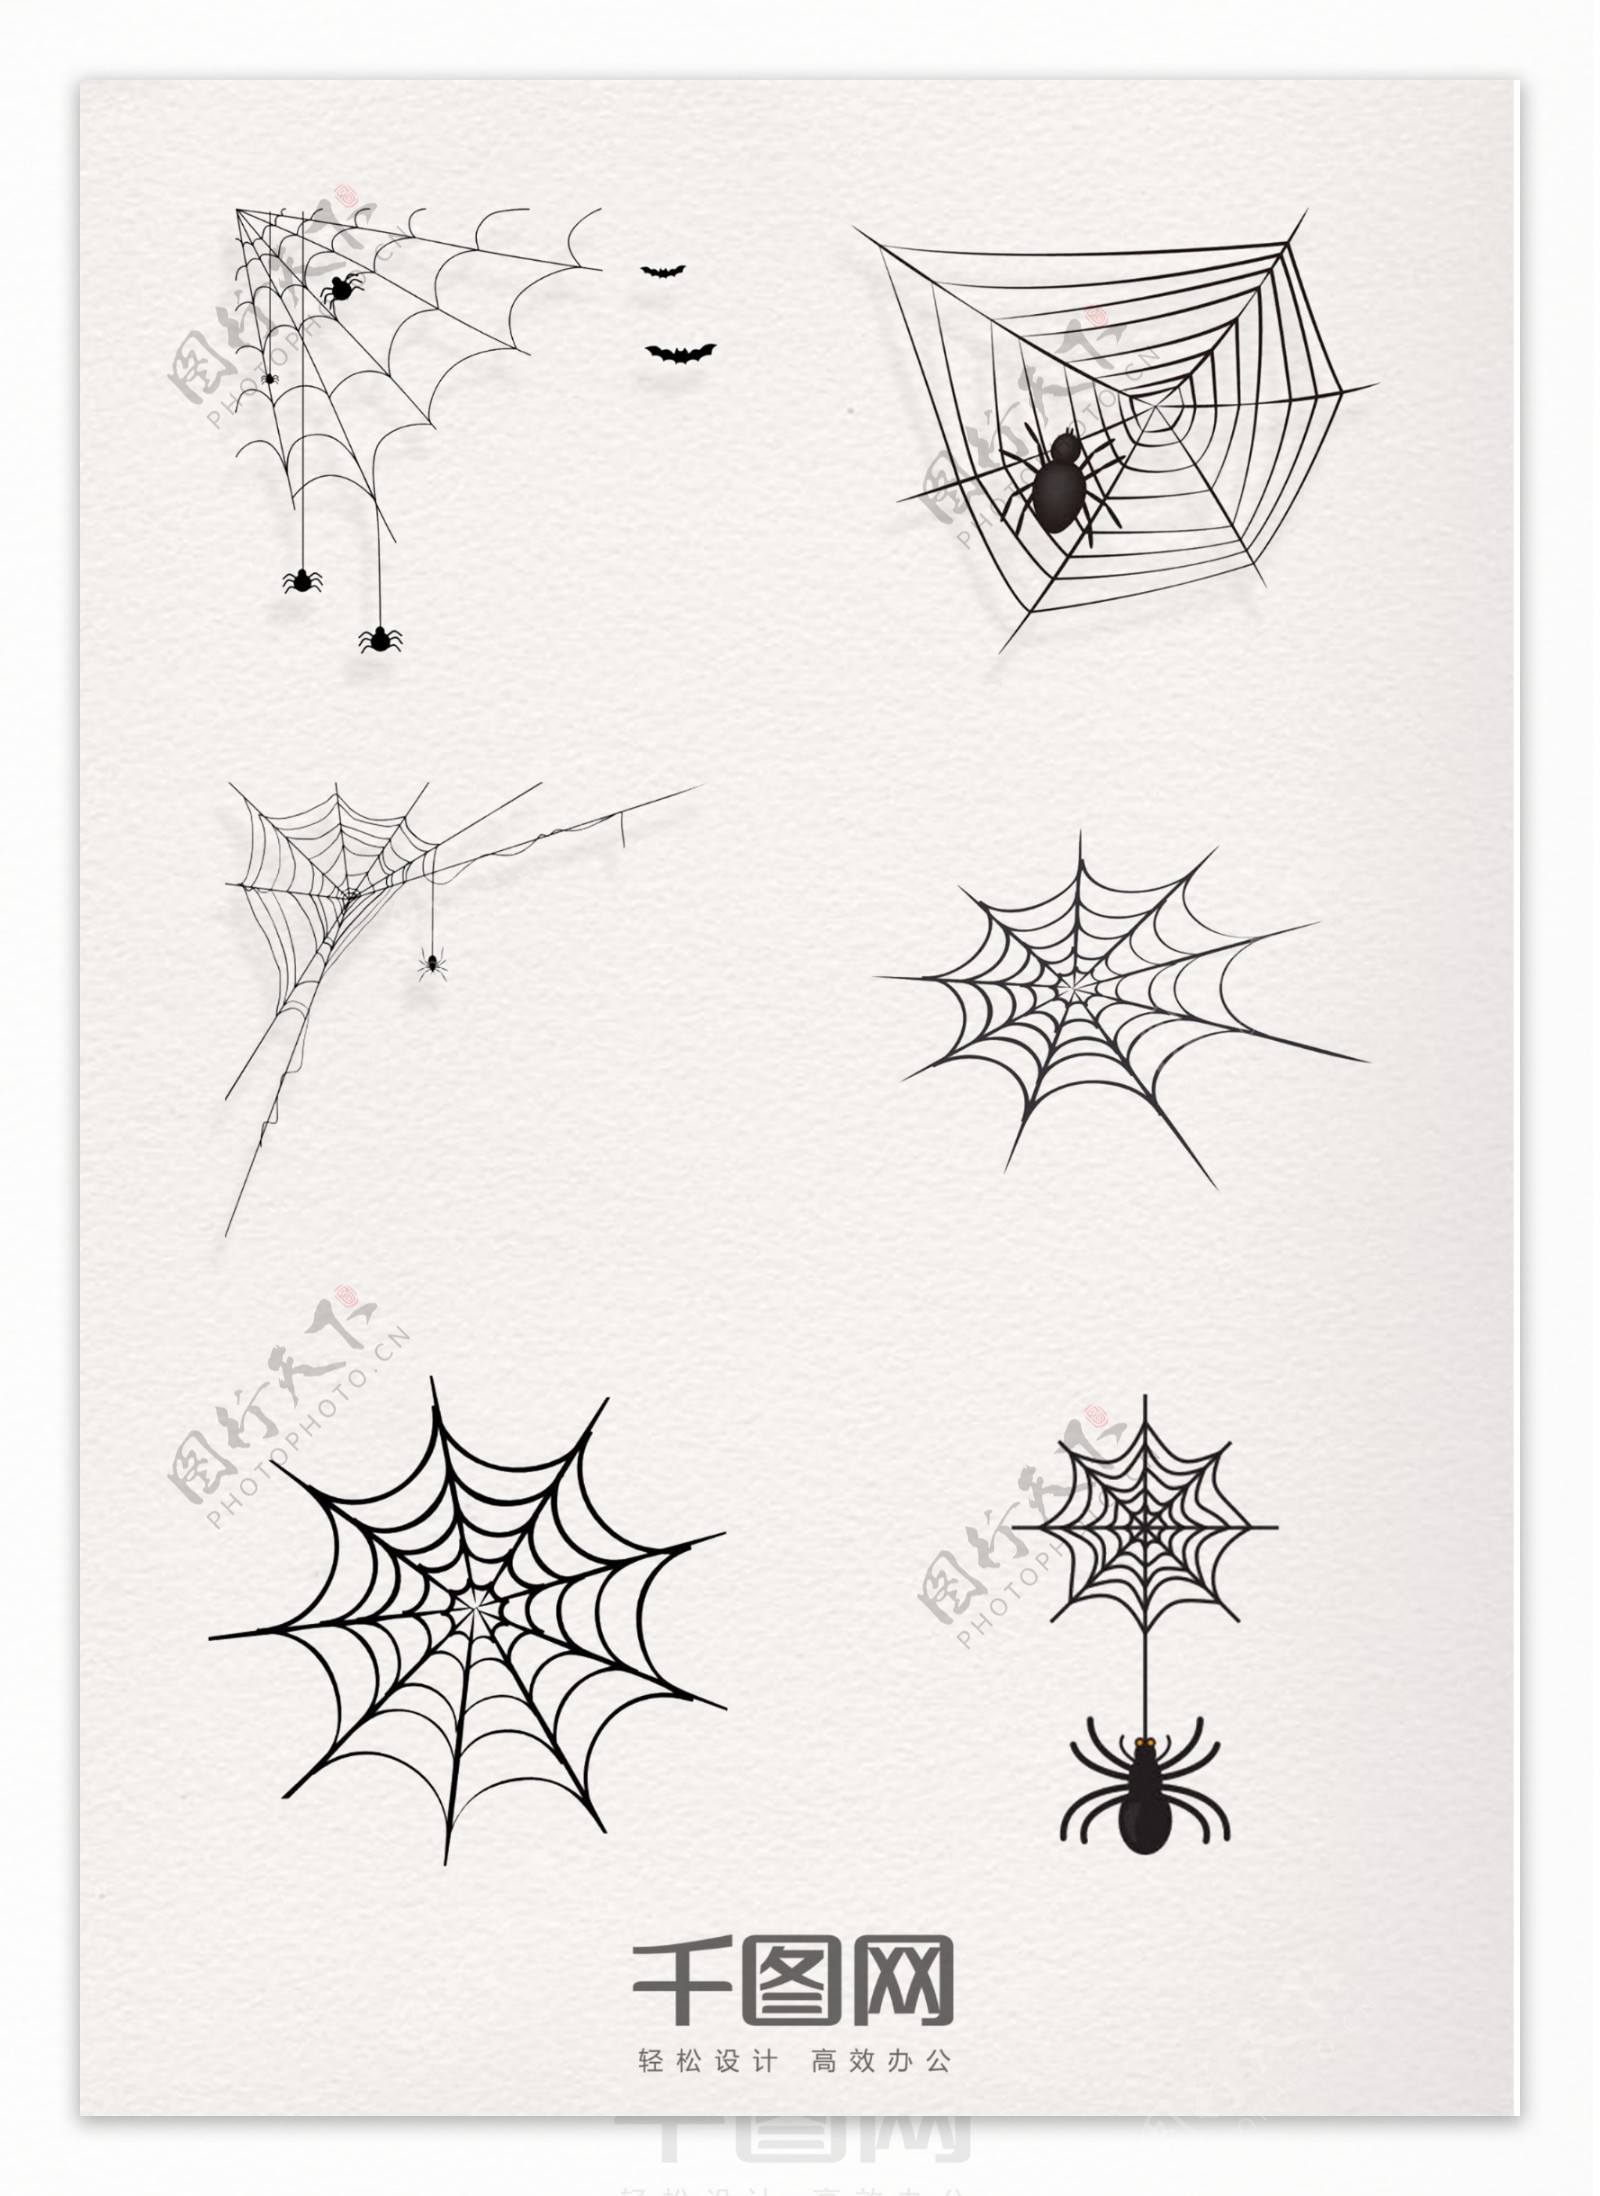 蜘蛛网装饰元素图案